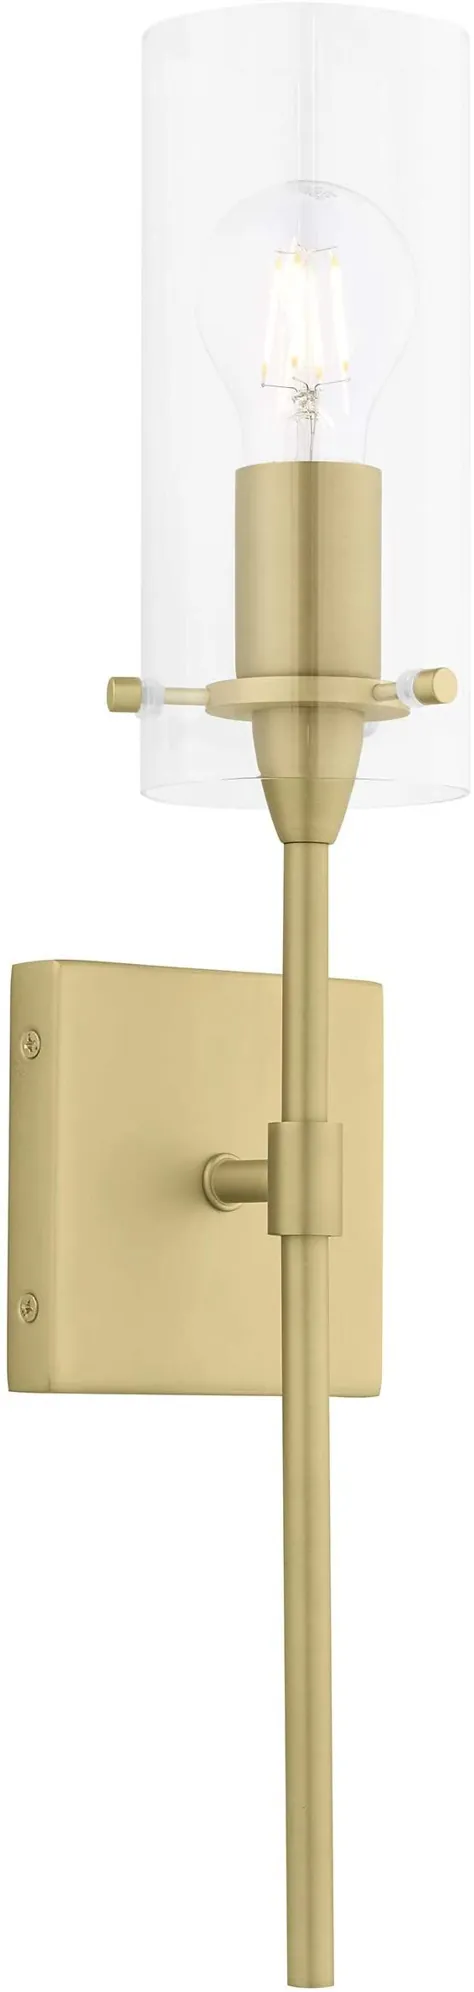 روشنایی دیوار عیار طلای Effimero - چراغ روشنایی حمام - چراغ های دیواری اتاق خواب داخل سالن مدرن با سایه های شیشه ای شفاف